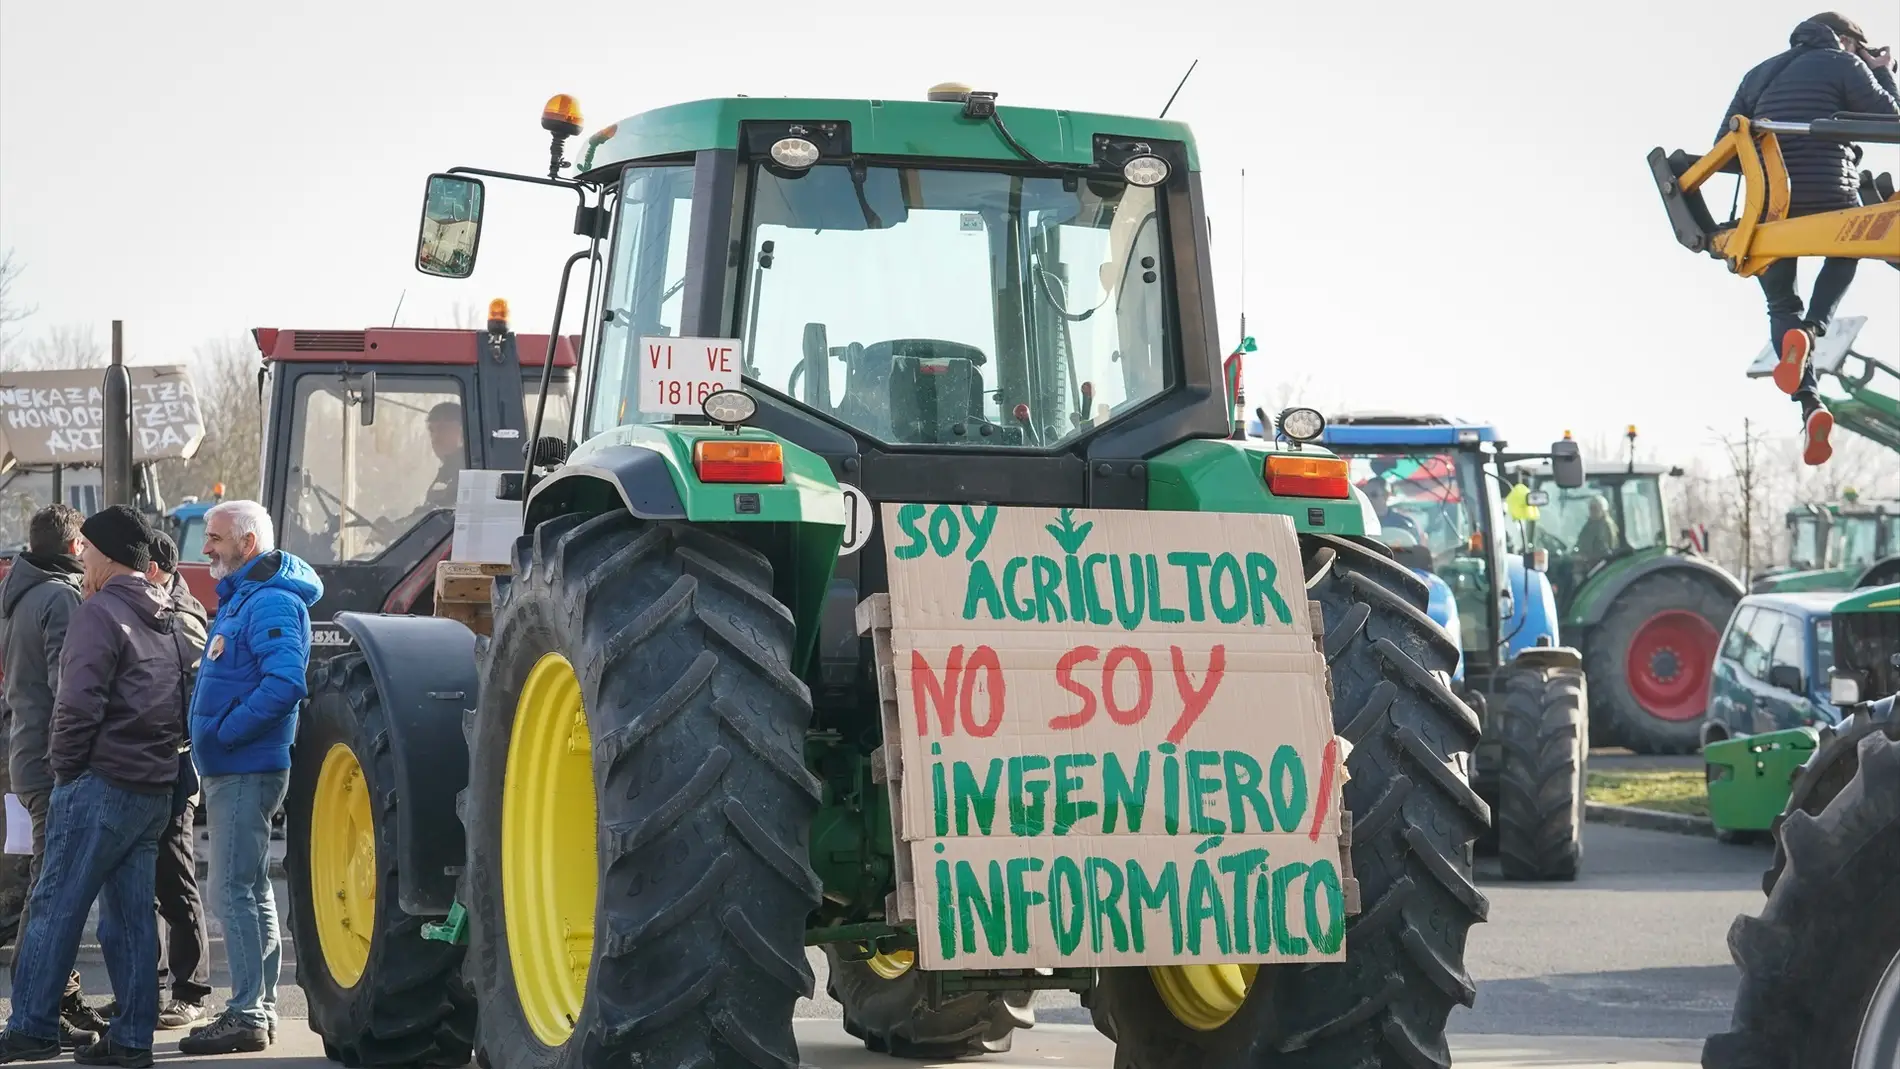 Imagen de los tractores que salen a las carreteras españolas a protestar